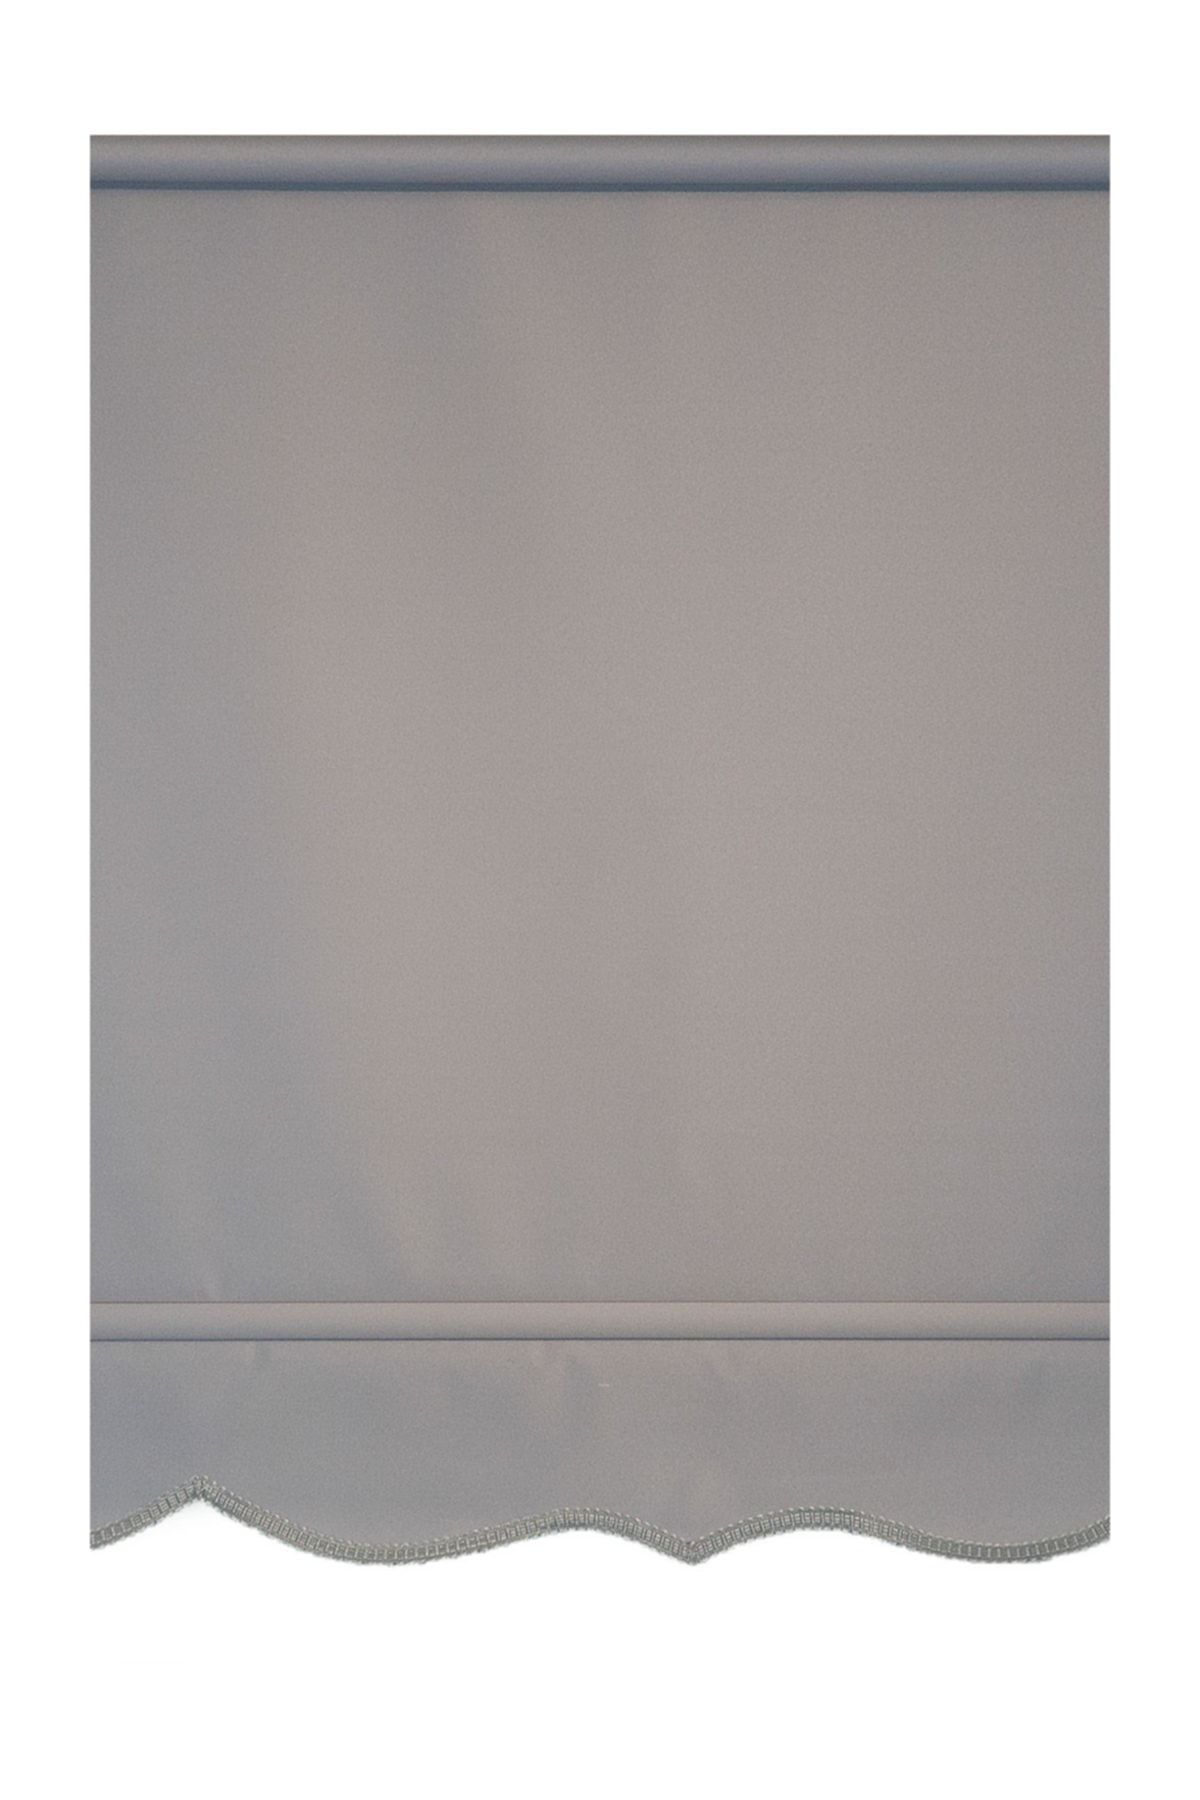 Efor Polyester Serisi Koyu Gri 110x200 cm